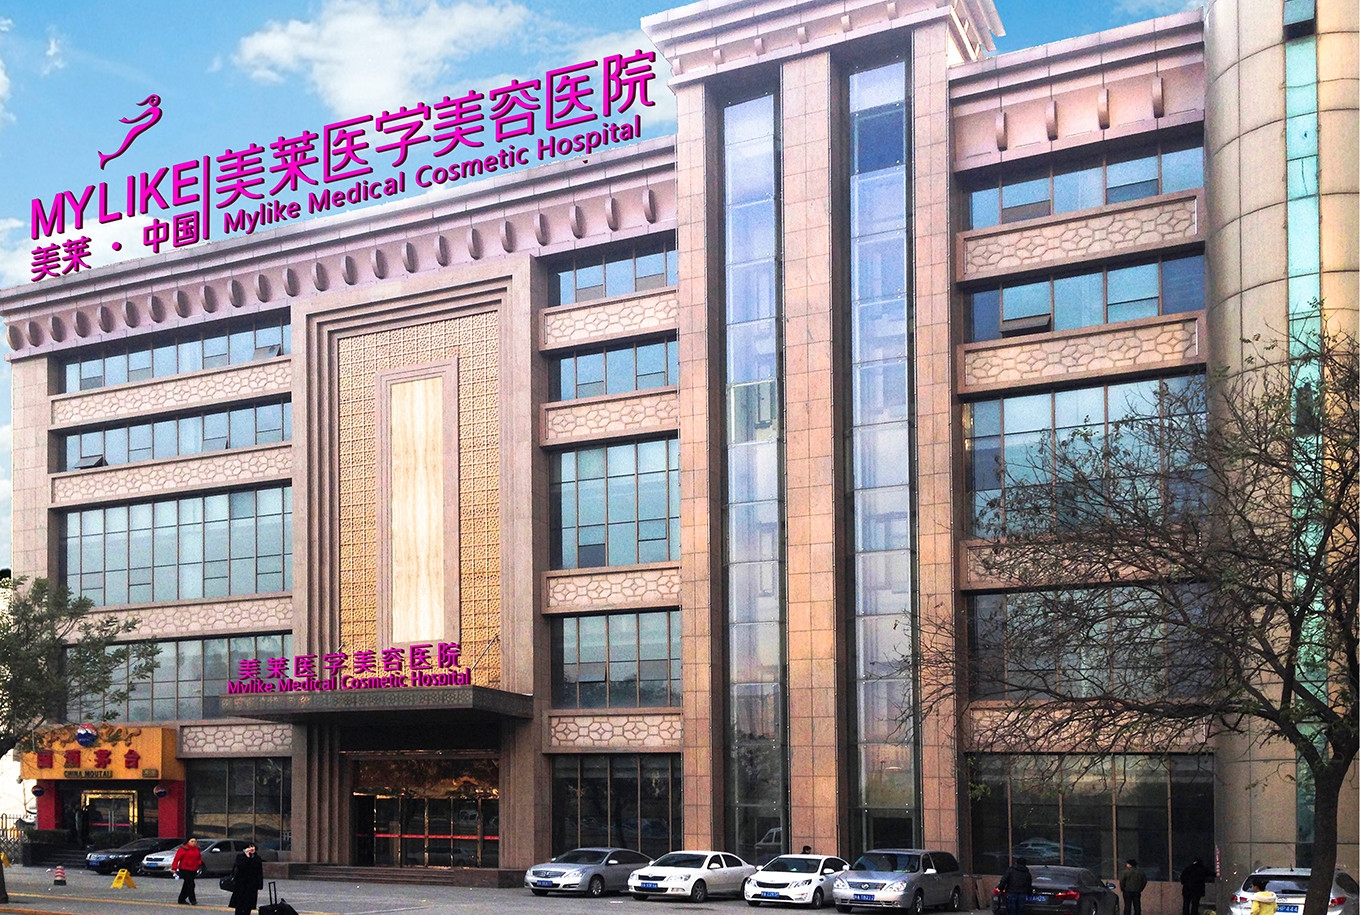 中国科学院大学宁波华美医院即将开建新医疗综合大楼-医院汇-丁香园